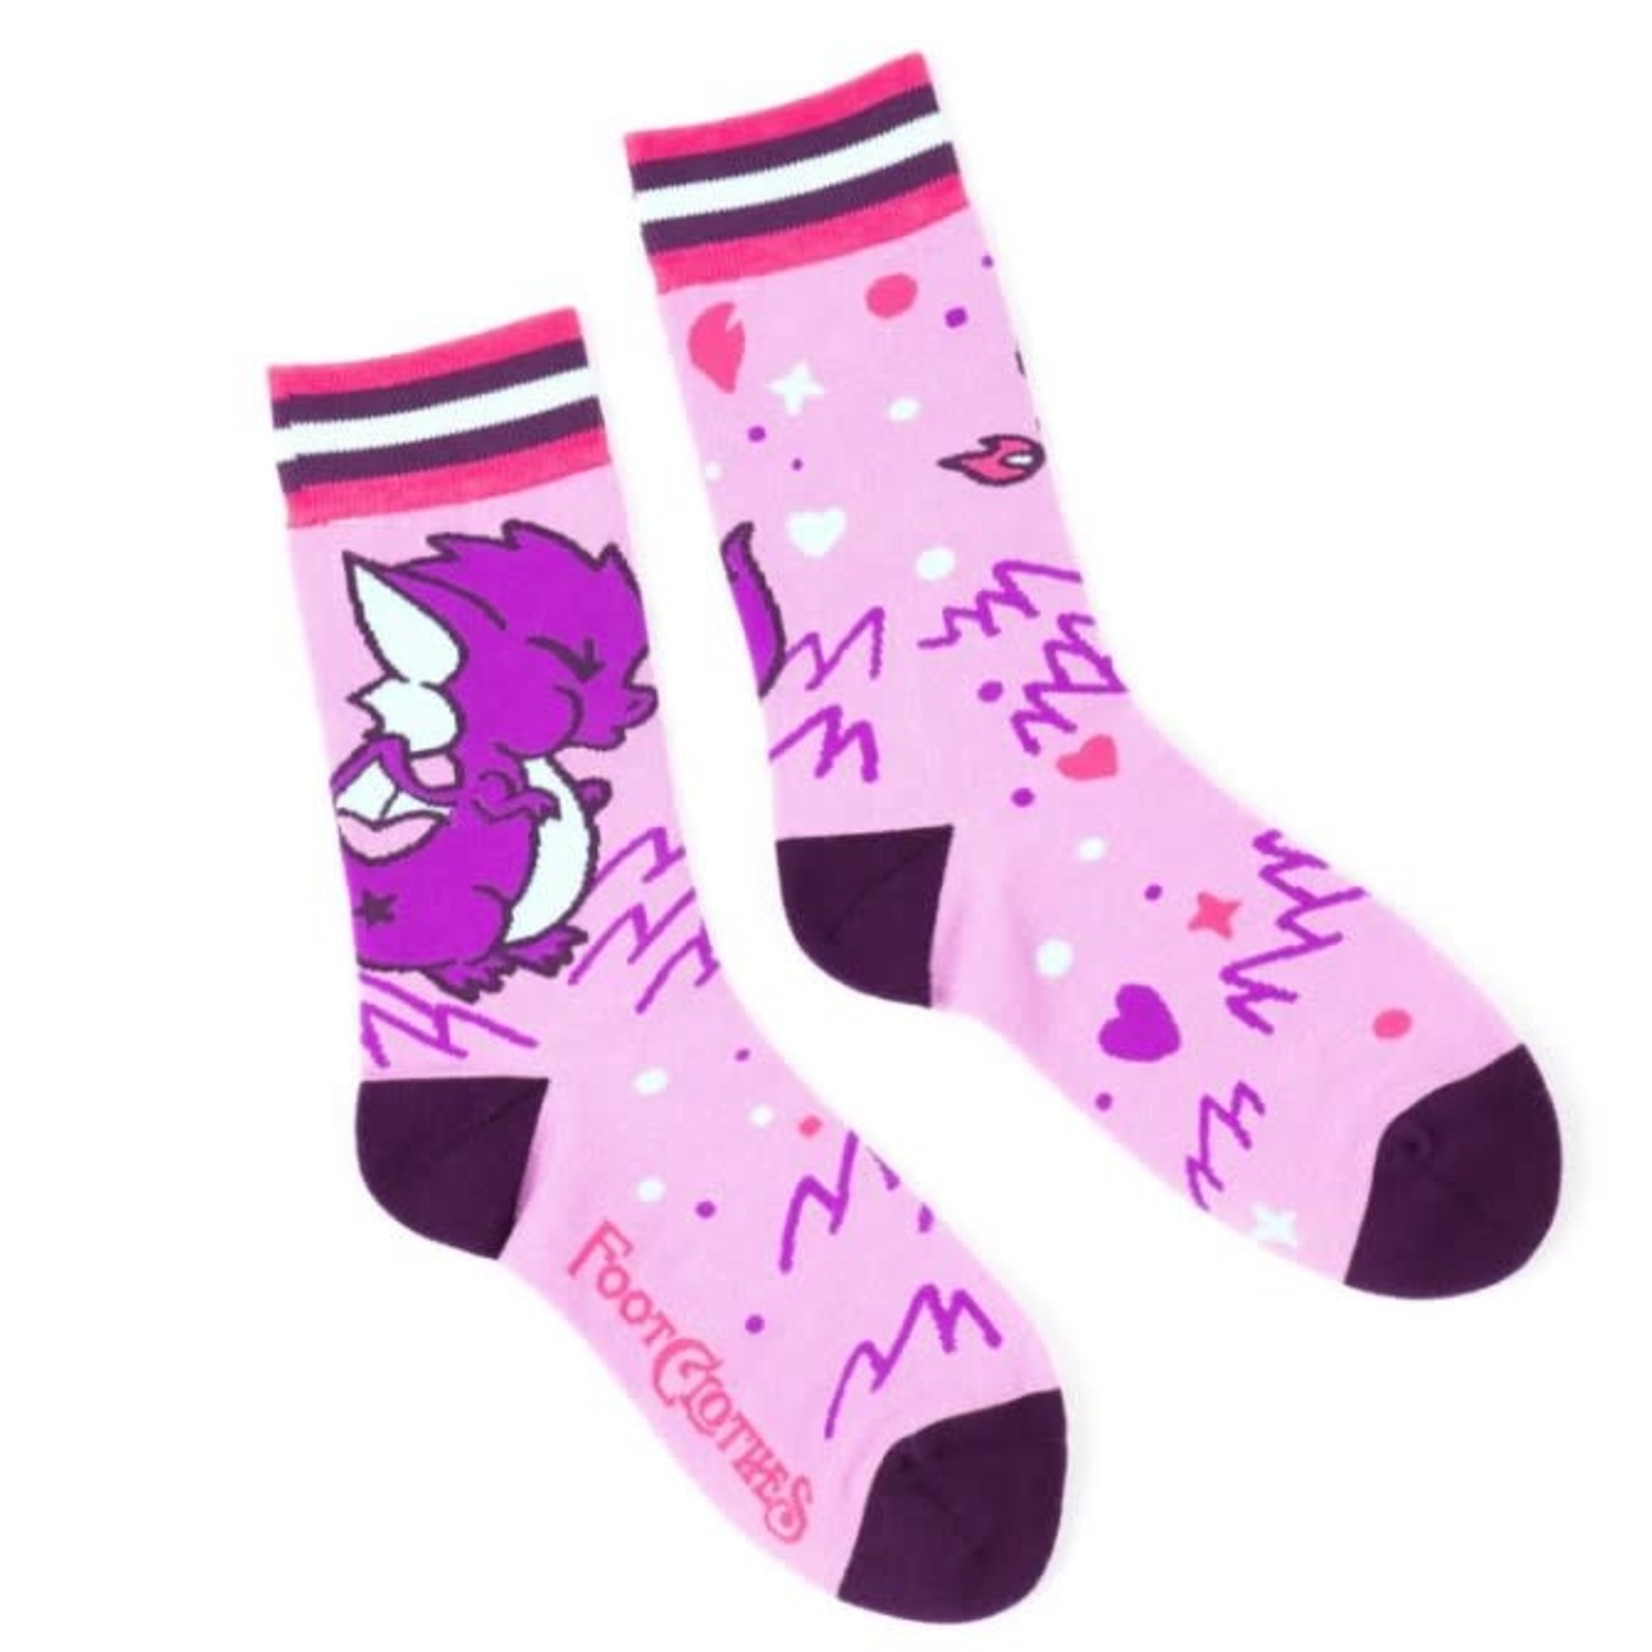 FootClothes Cute Dragon Socks